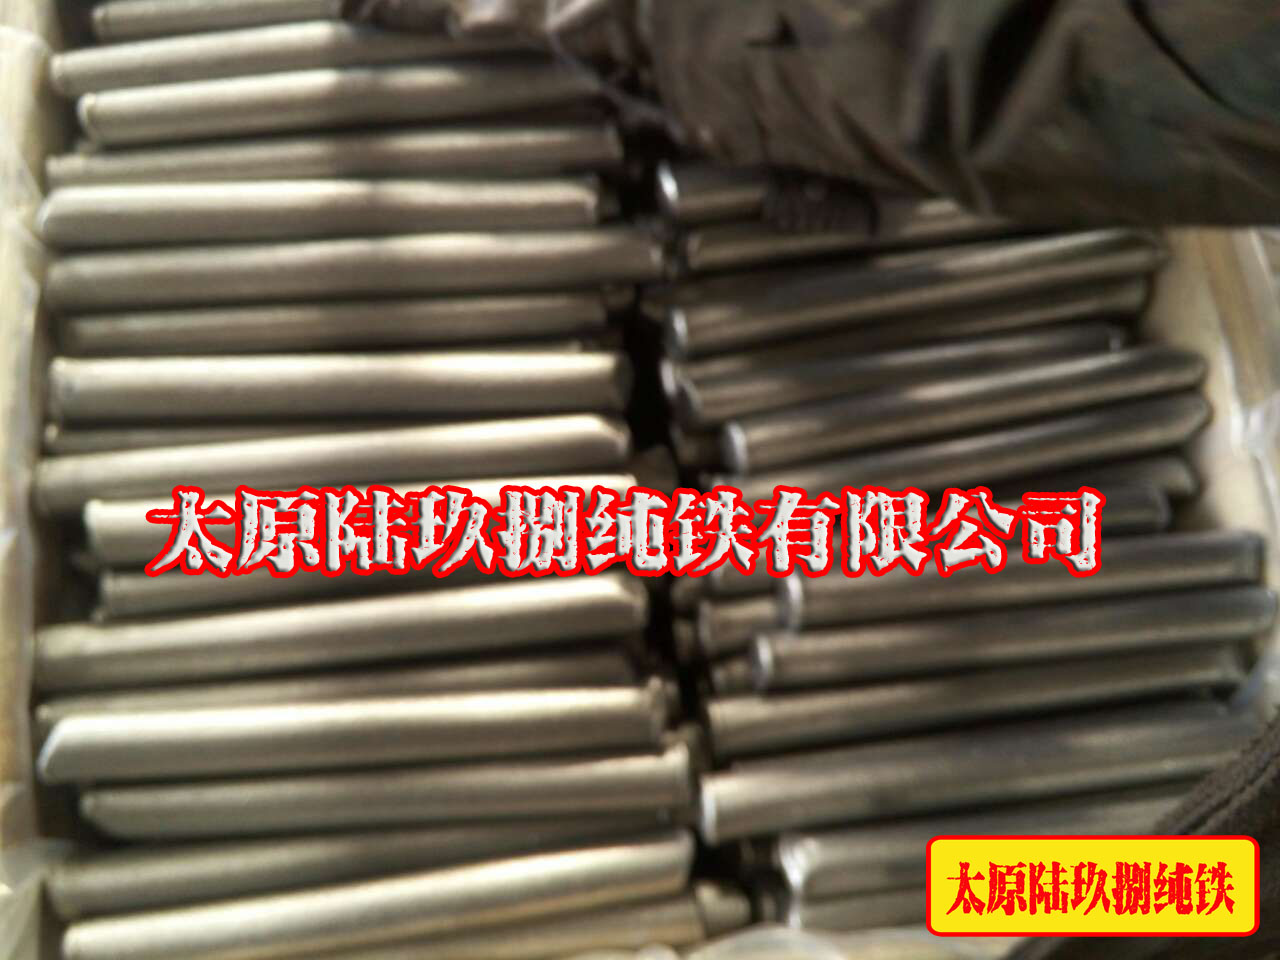 太原陆玖捌专业销售纯铁板坯 大量供应炉料纯铁   大量供应原料纯铁  炉料纯铁圆钢图片